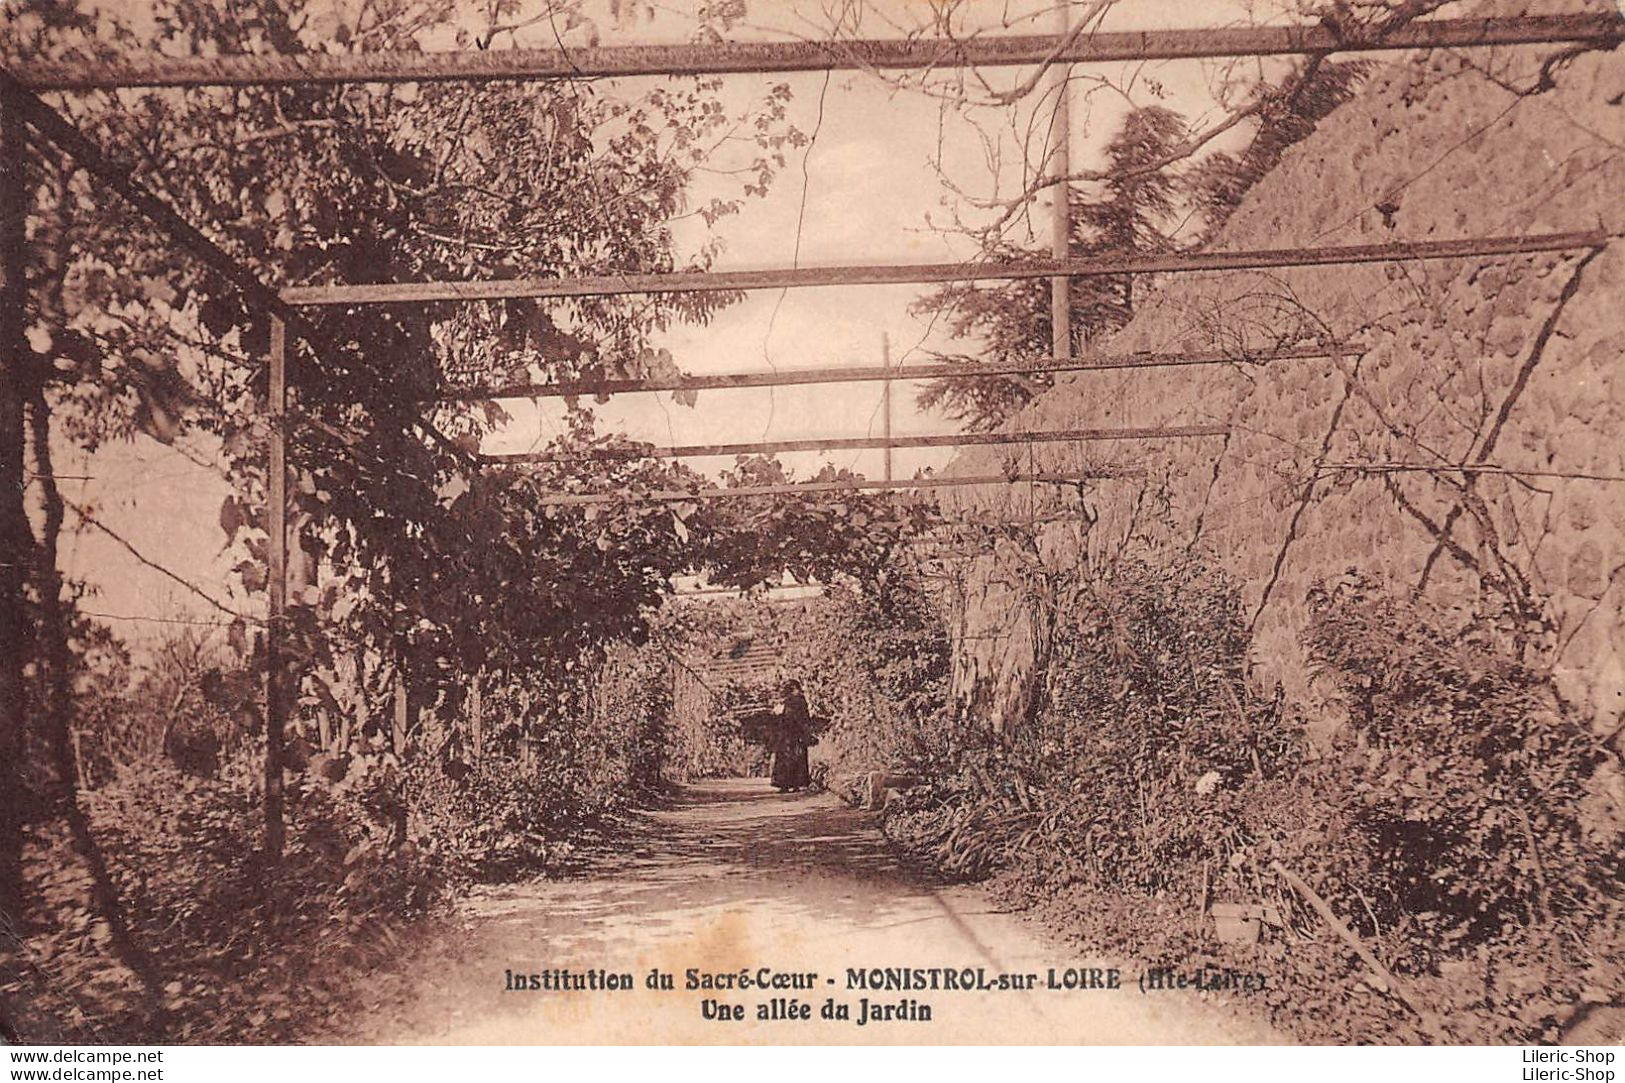 [43 ] Institution Du Sacré Cœur - Monistrol-sur-Loire - Une Allée Du Jardin Cpa ± 1940 - Monistrol Sur Loire